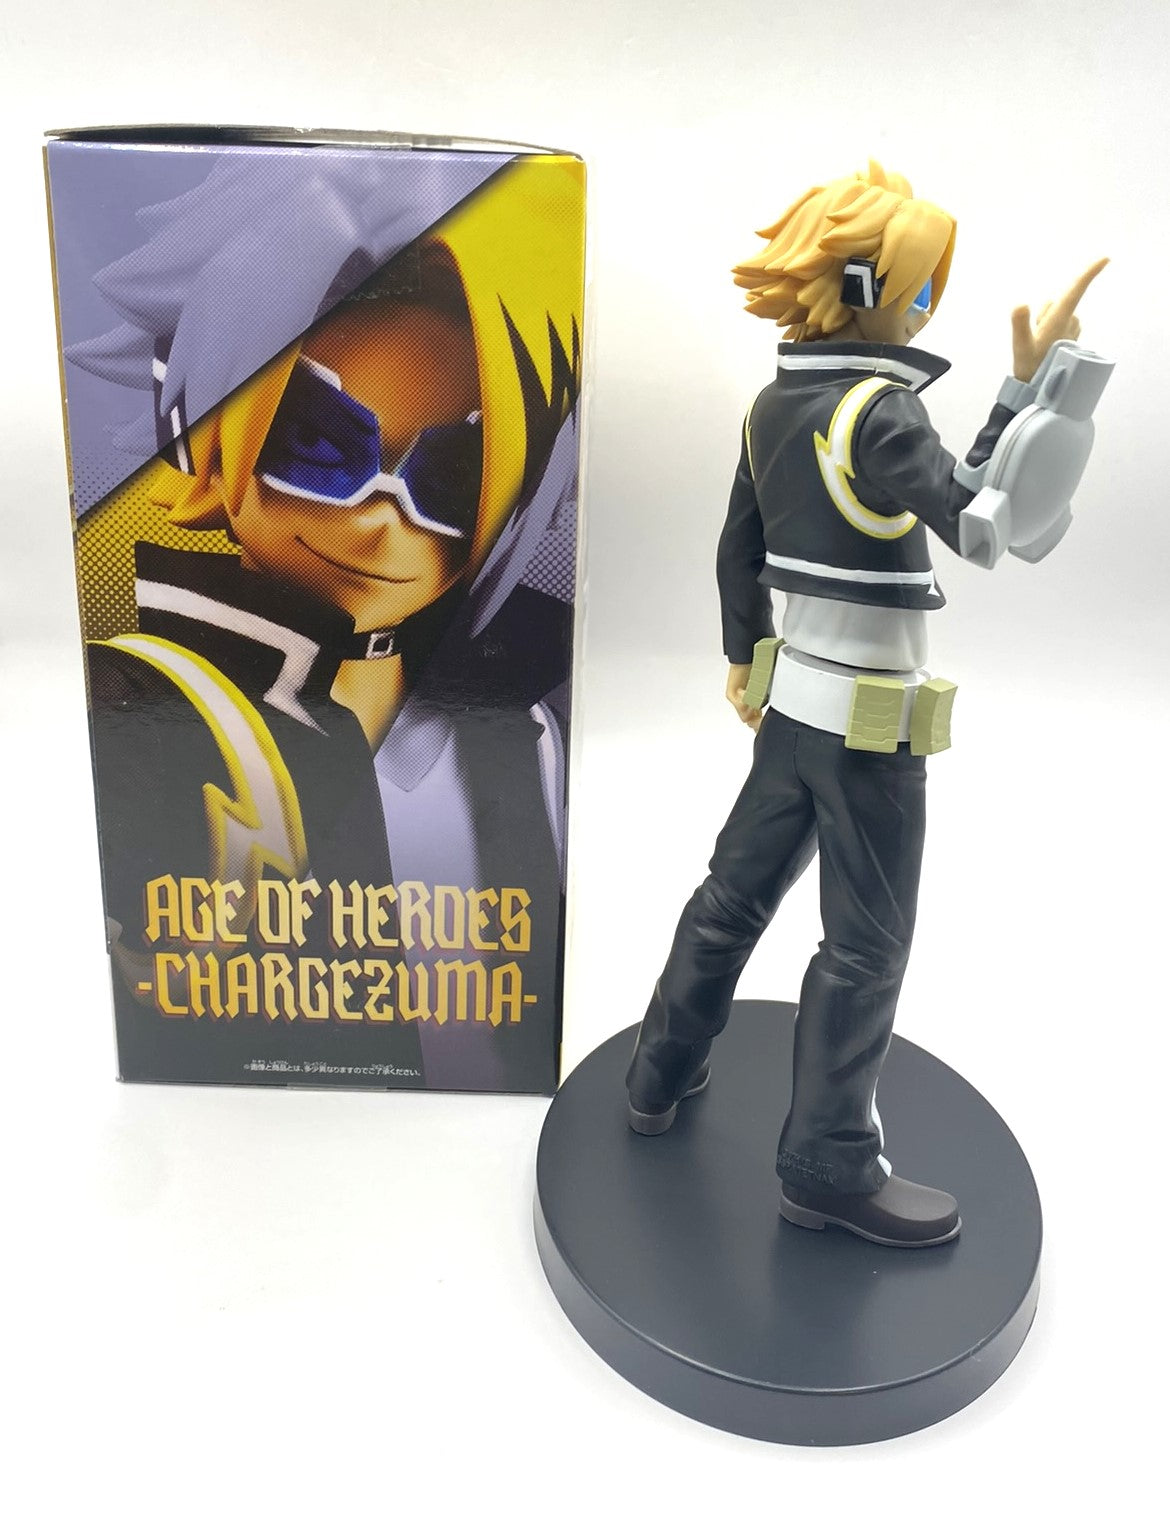 My Hero Academia - Age of Heroes - Chargezuma Figure / Figurine Bandai Banpresto